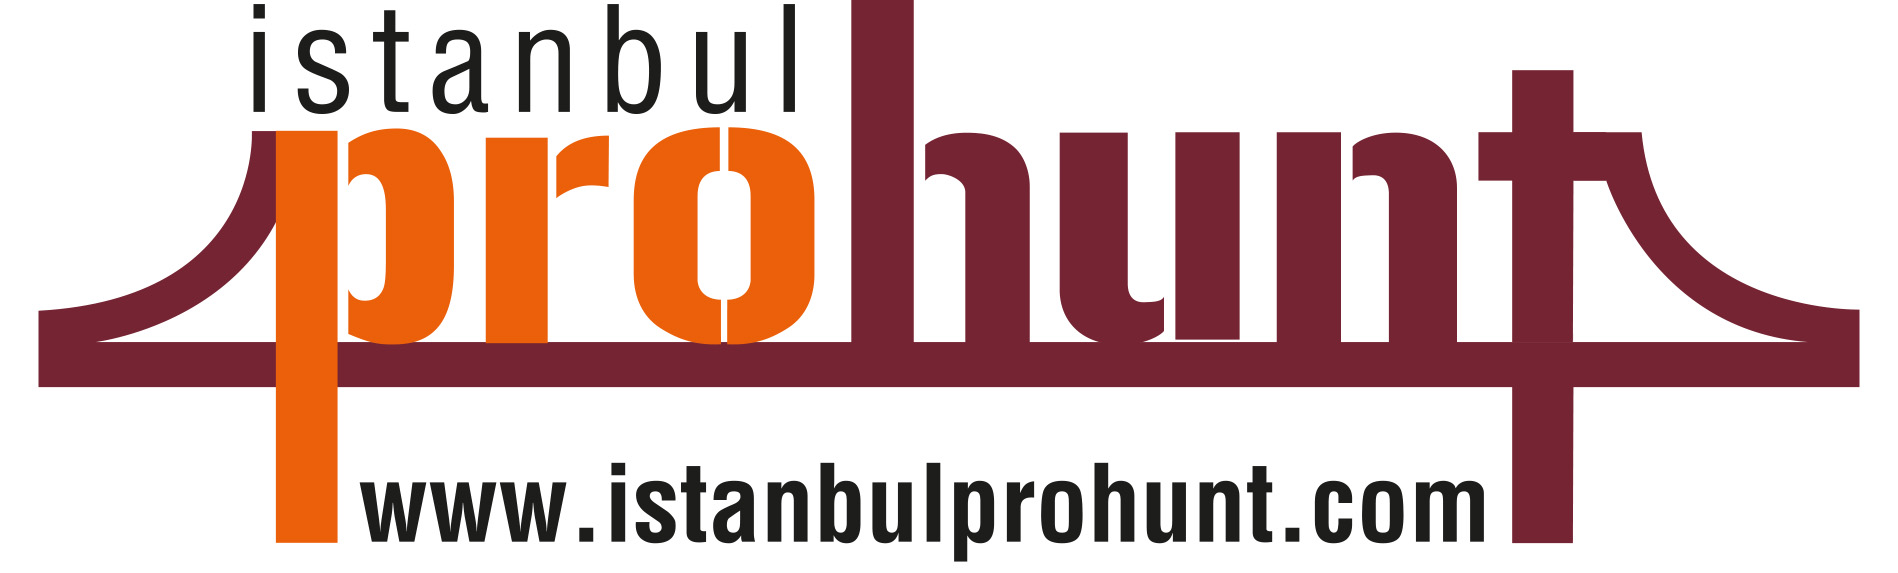 Istanbul Prohunt